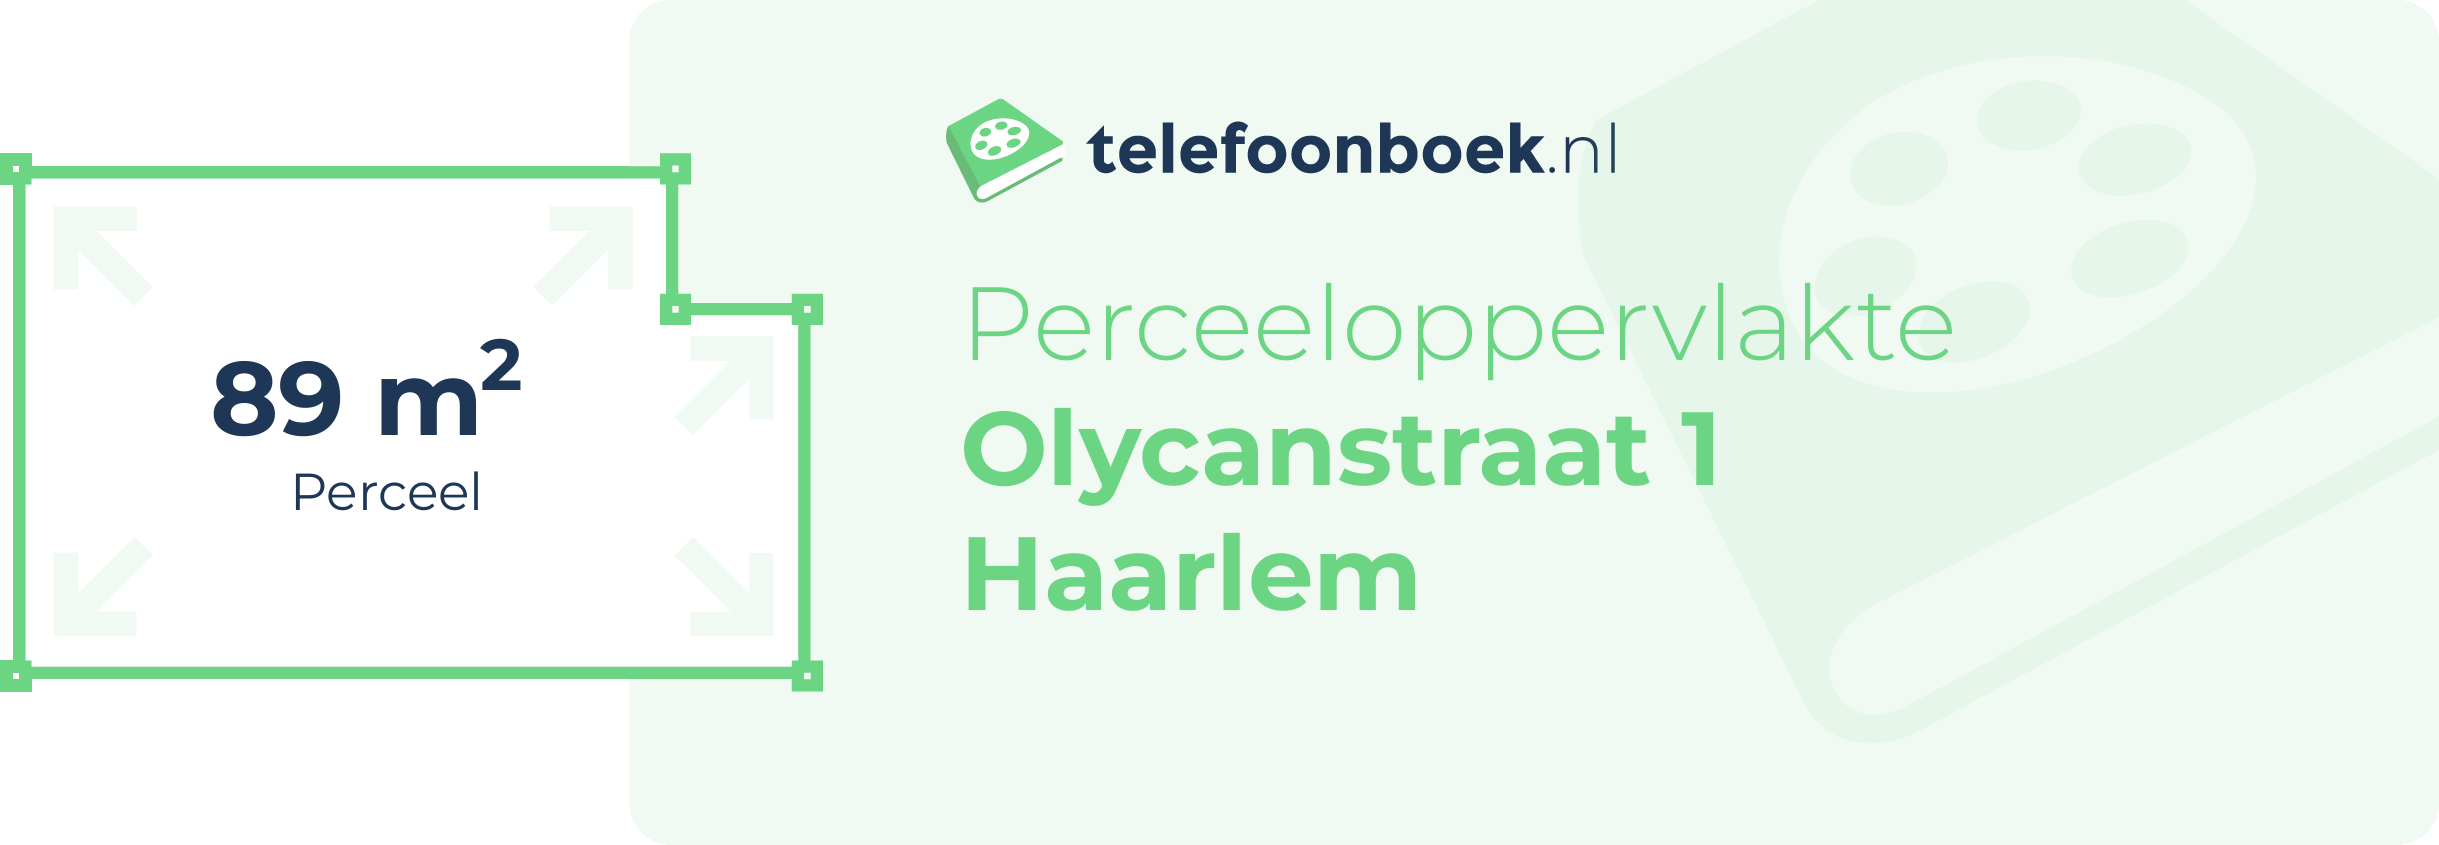 Perceeloppervlakte Olycanstraat 1 Haarlem